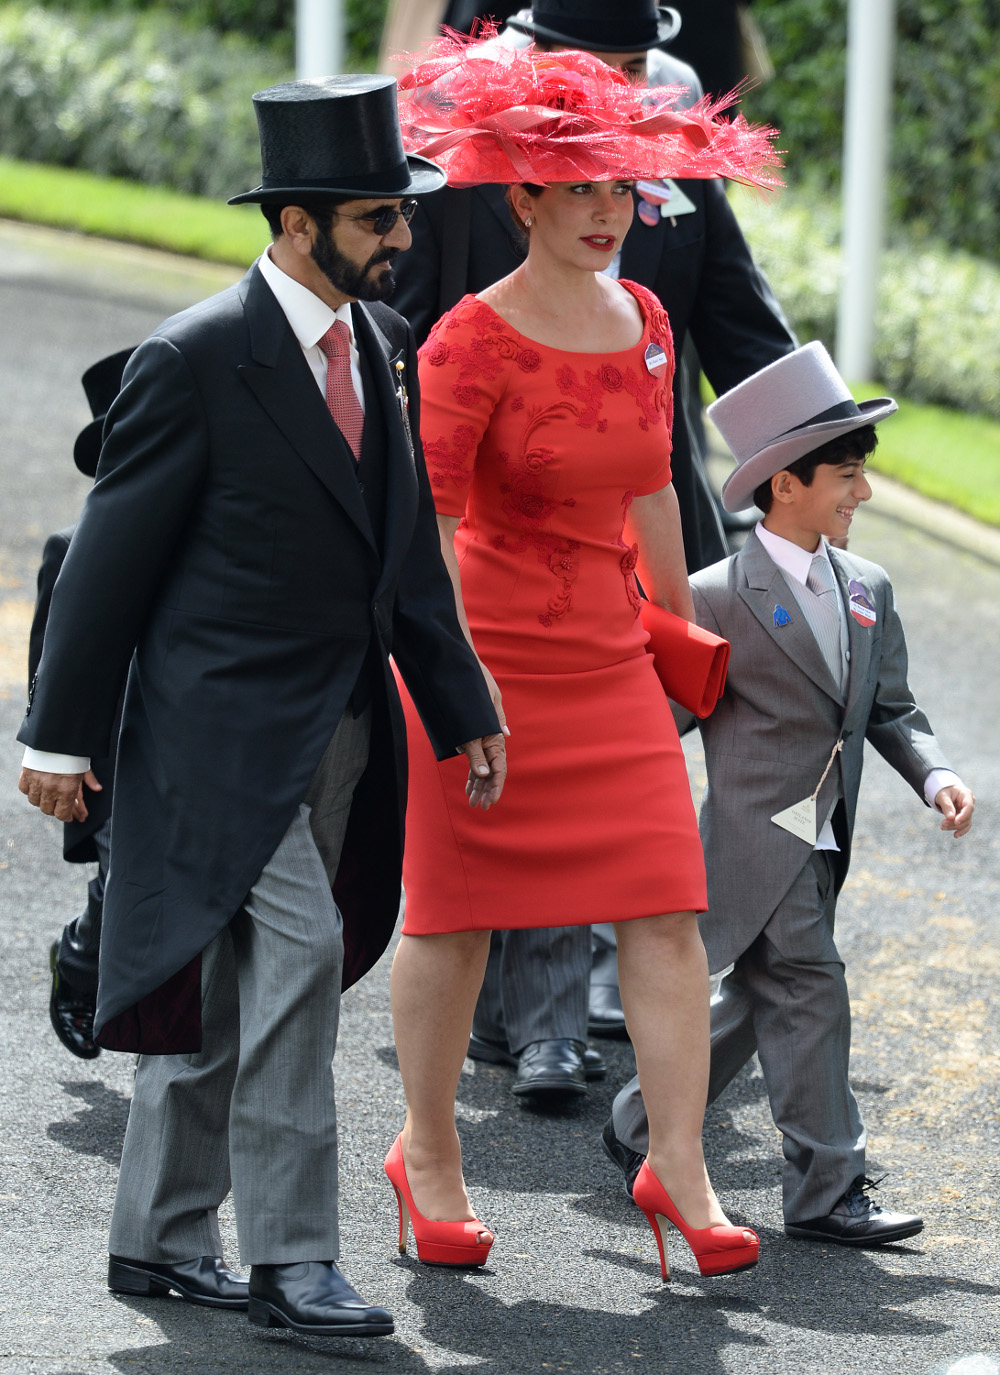  πριγκίπισσα Χάγια φέρεται να έχει «δραπετεύσει» στο Λονδίνο με τα δυο της παιδιά